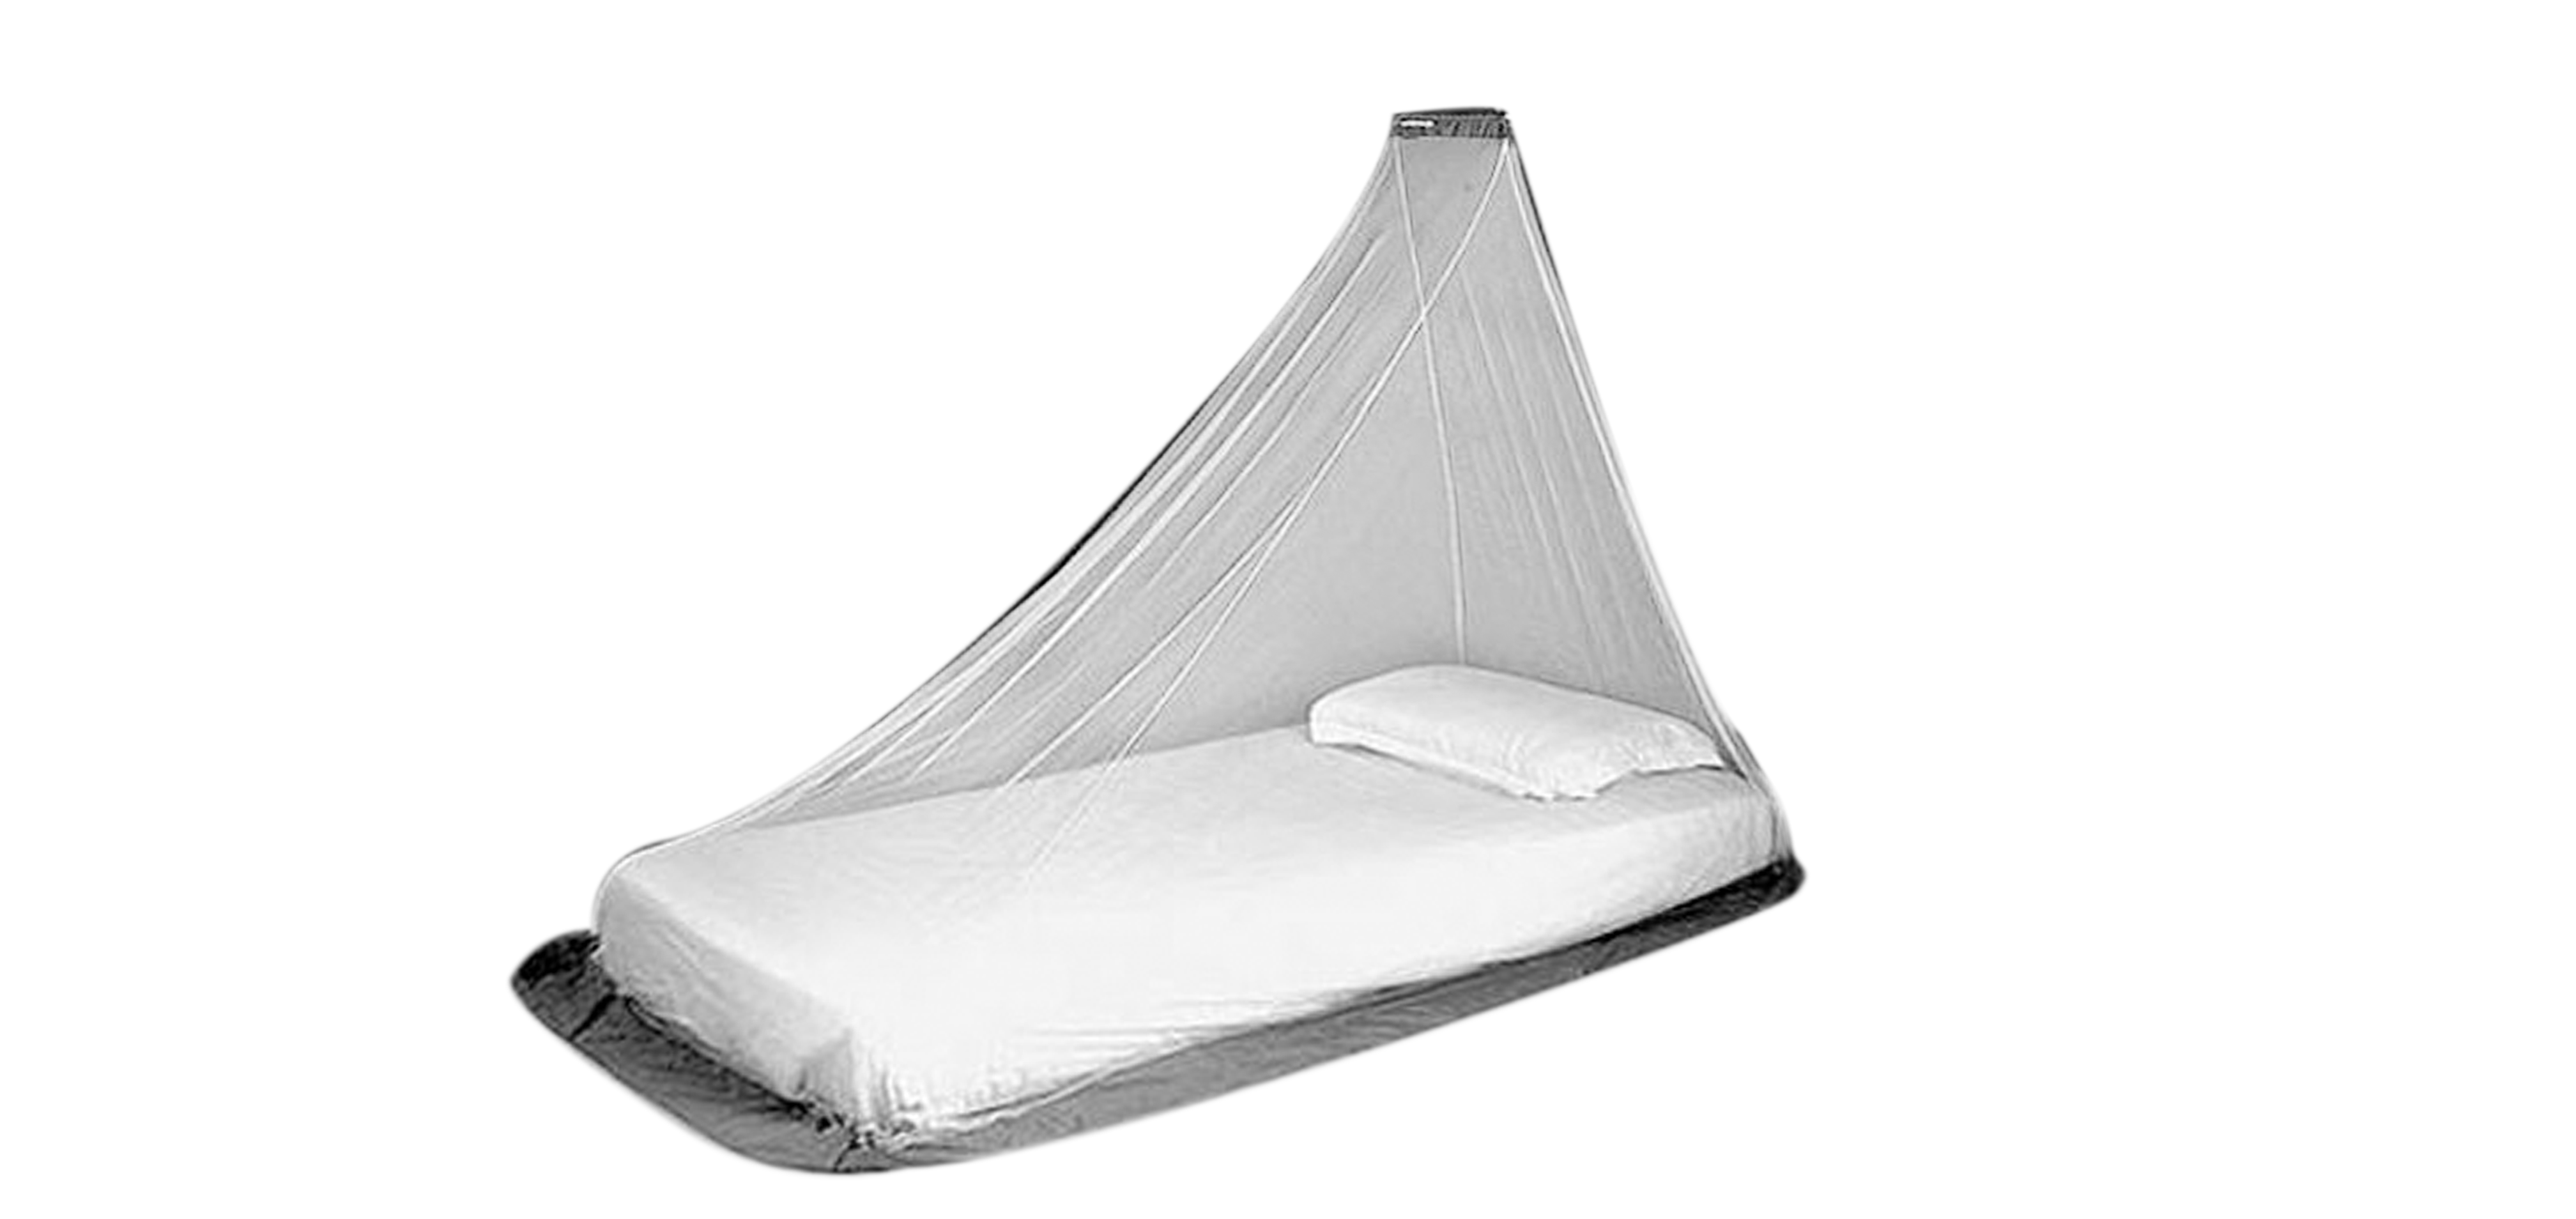 mosquito net over air mattress